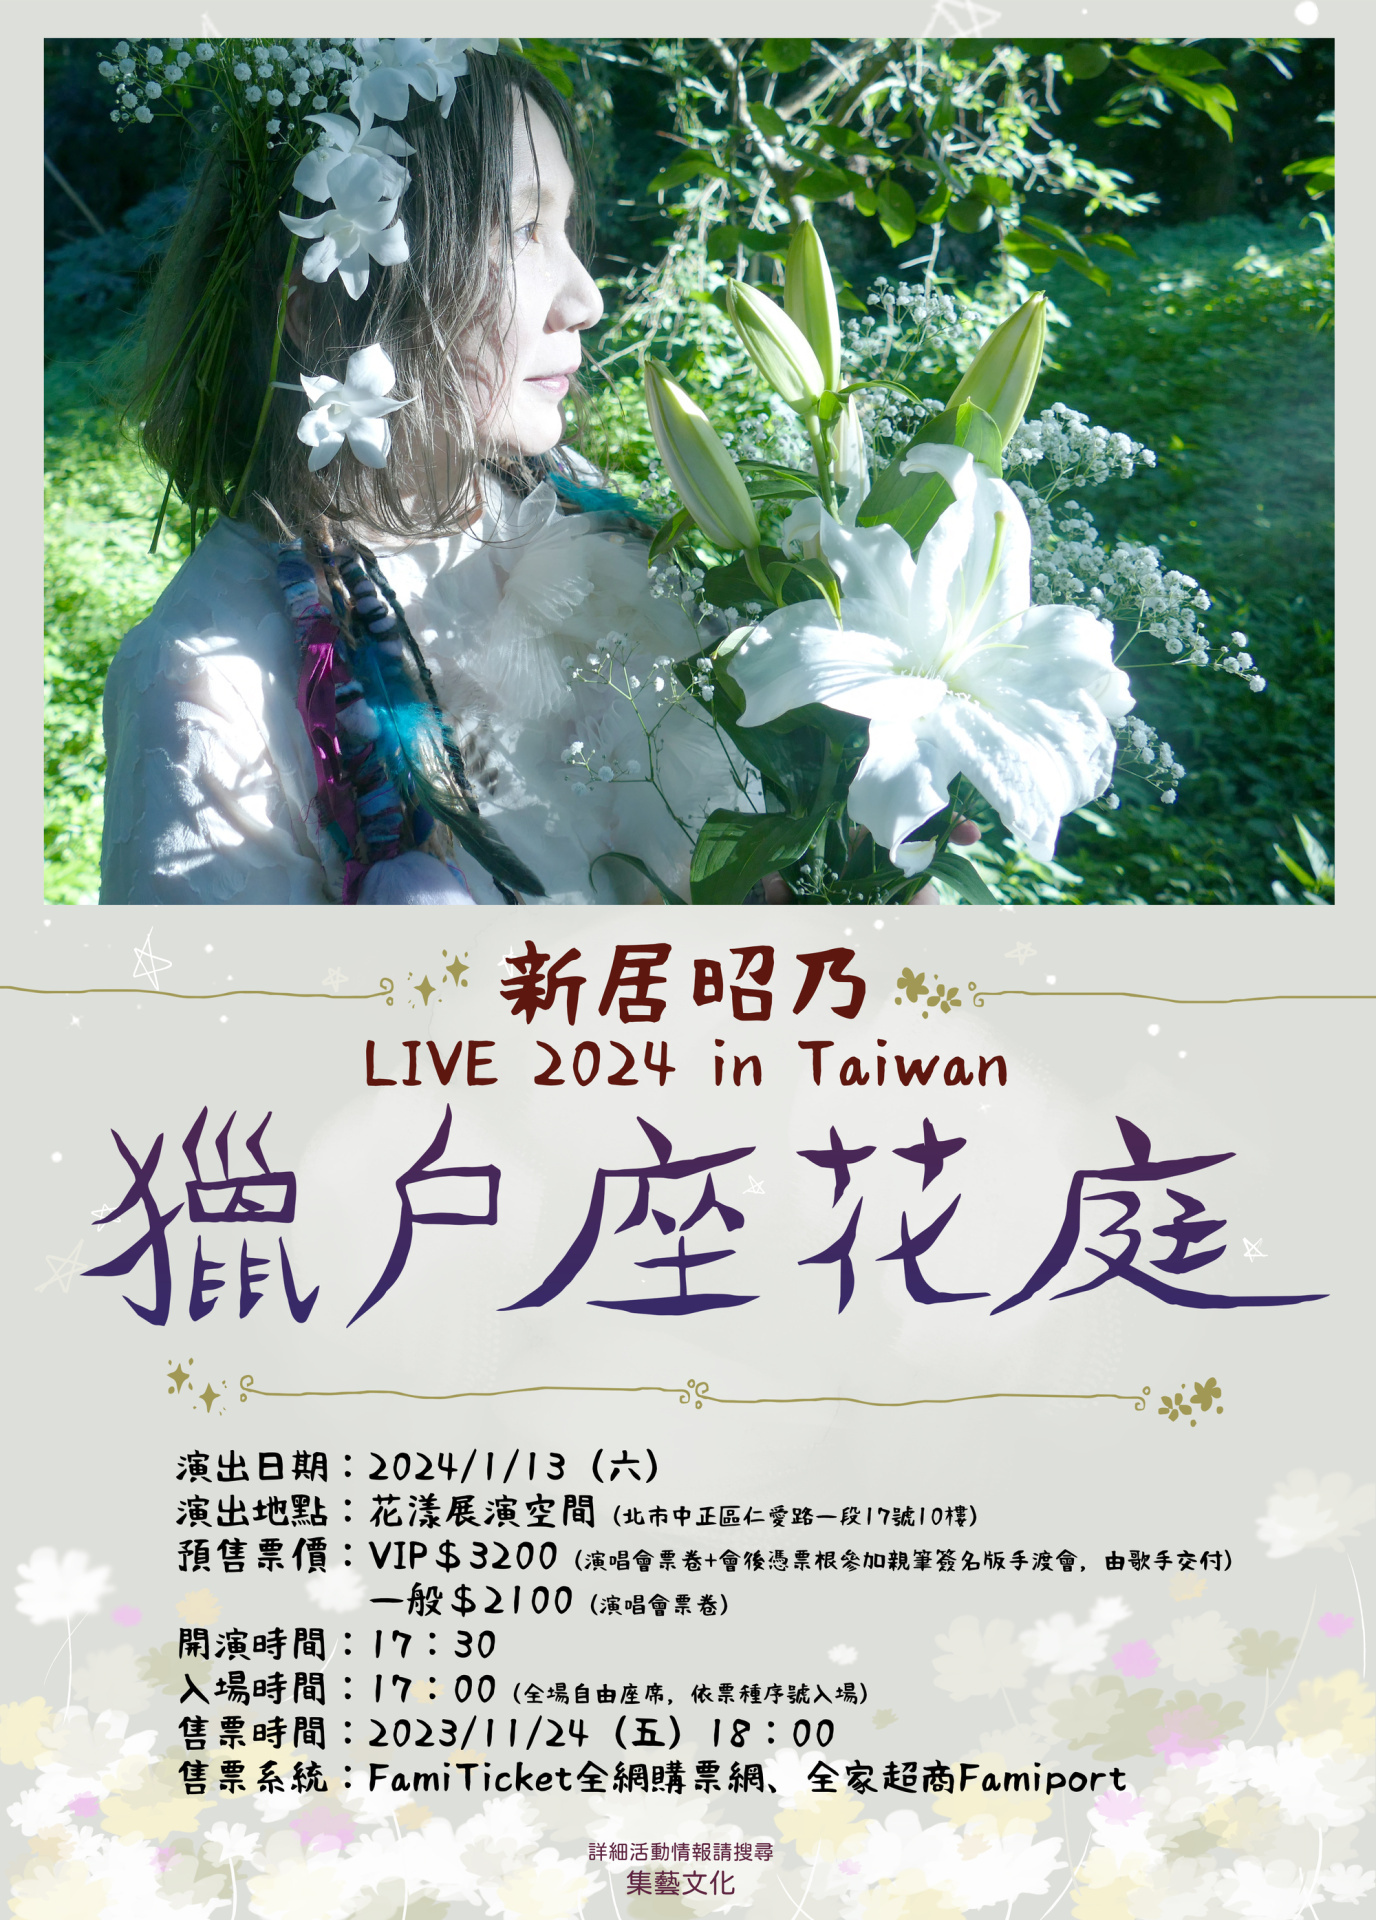 暌違多年新居昭乃將再度來台開唱2024「獵戶座花庭」in Taiwan 一月於台北登場- 巴哈姆特